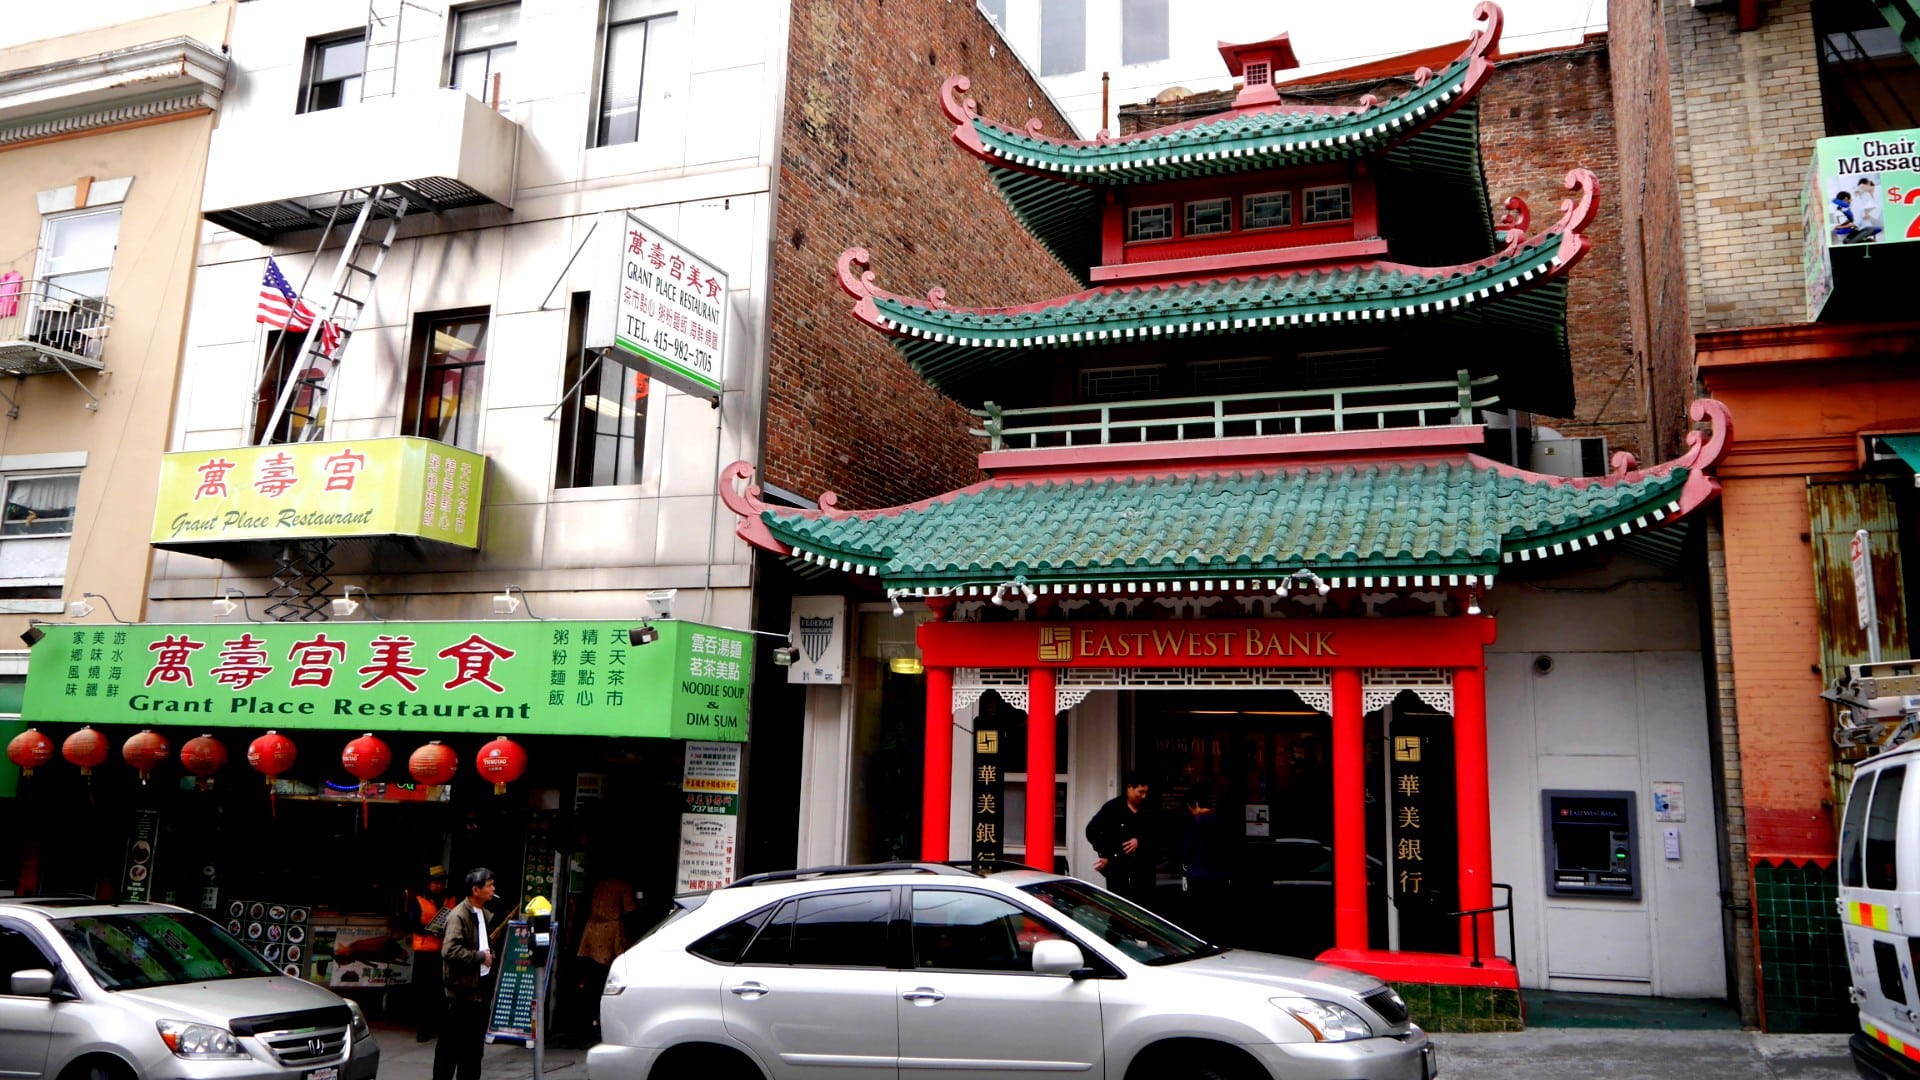 San Francisco tiene el segundo Chinatown más grande fuera de Asia